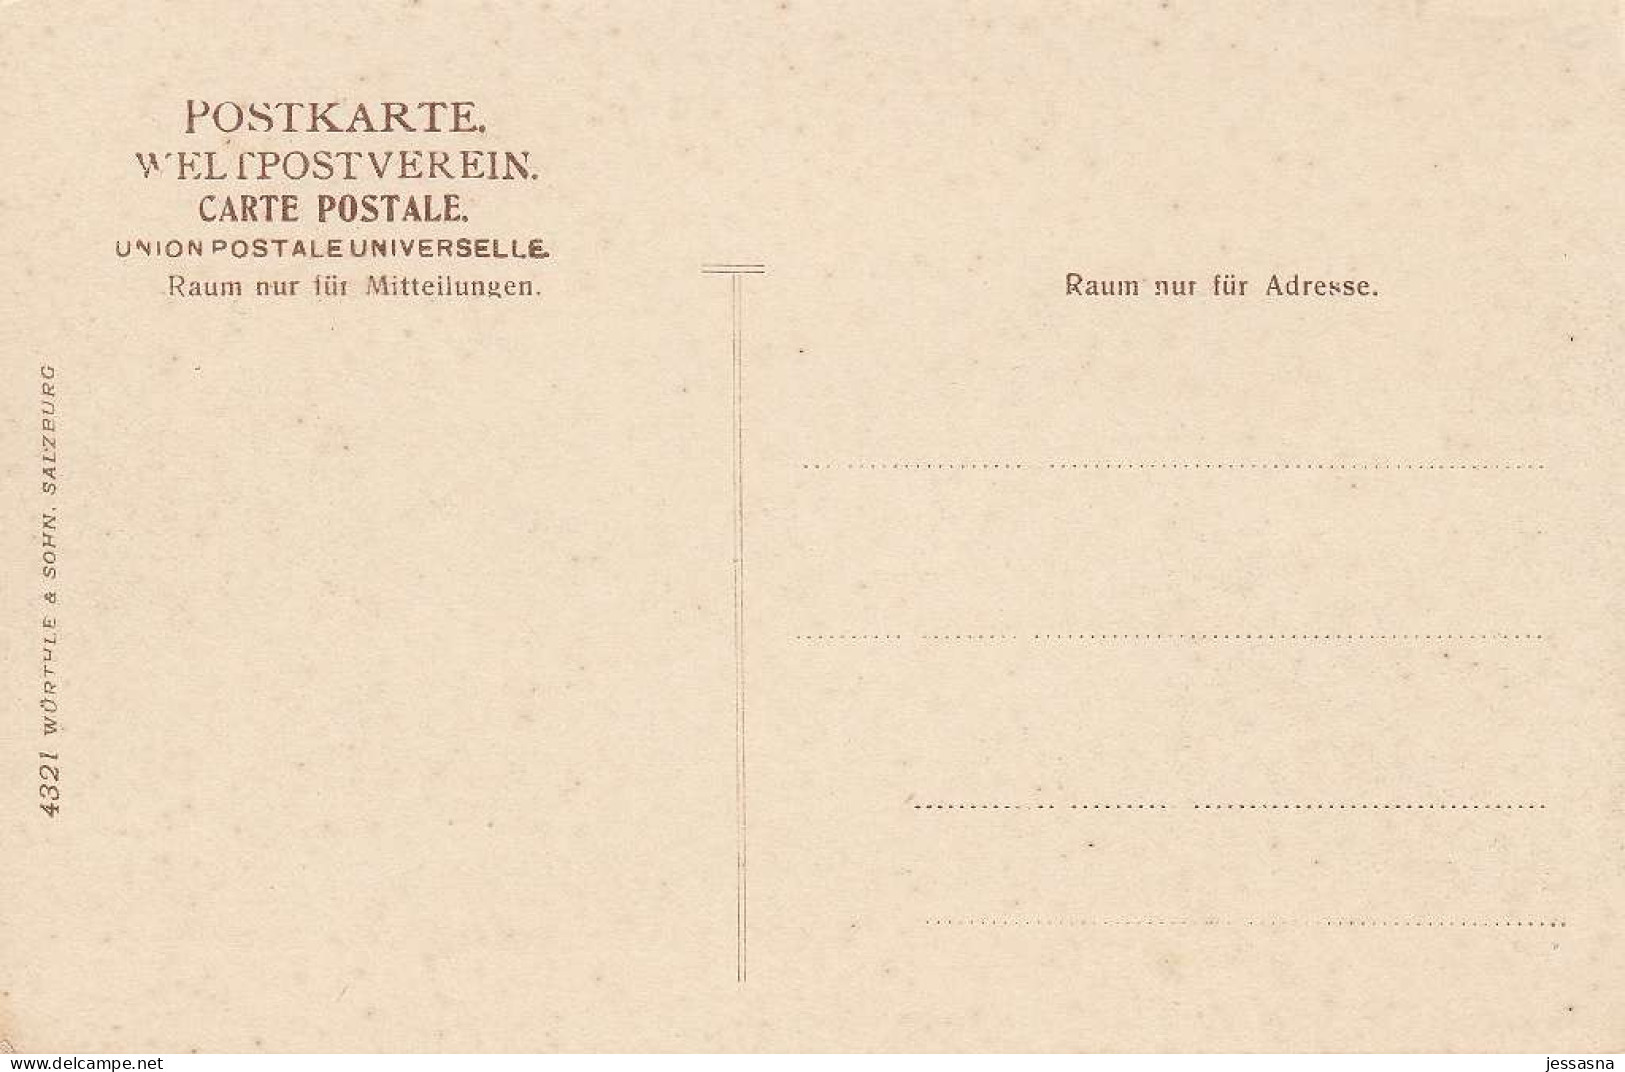 AK - OÖ - Gmunden - Ruderer Am Traunsee - 1900 - Gmunden